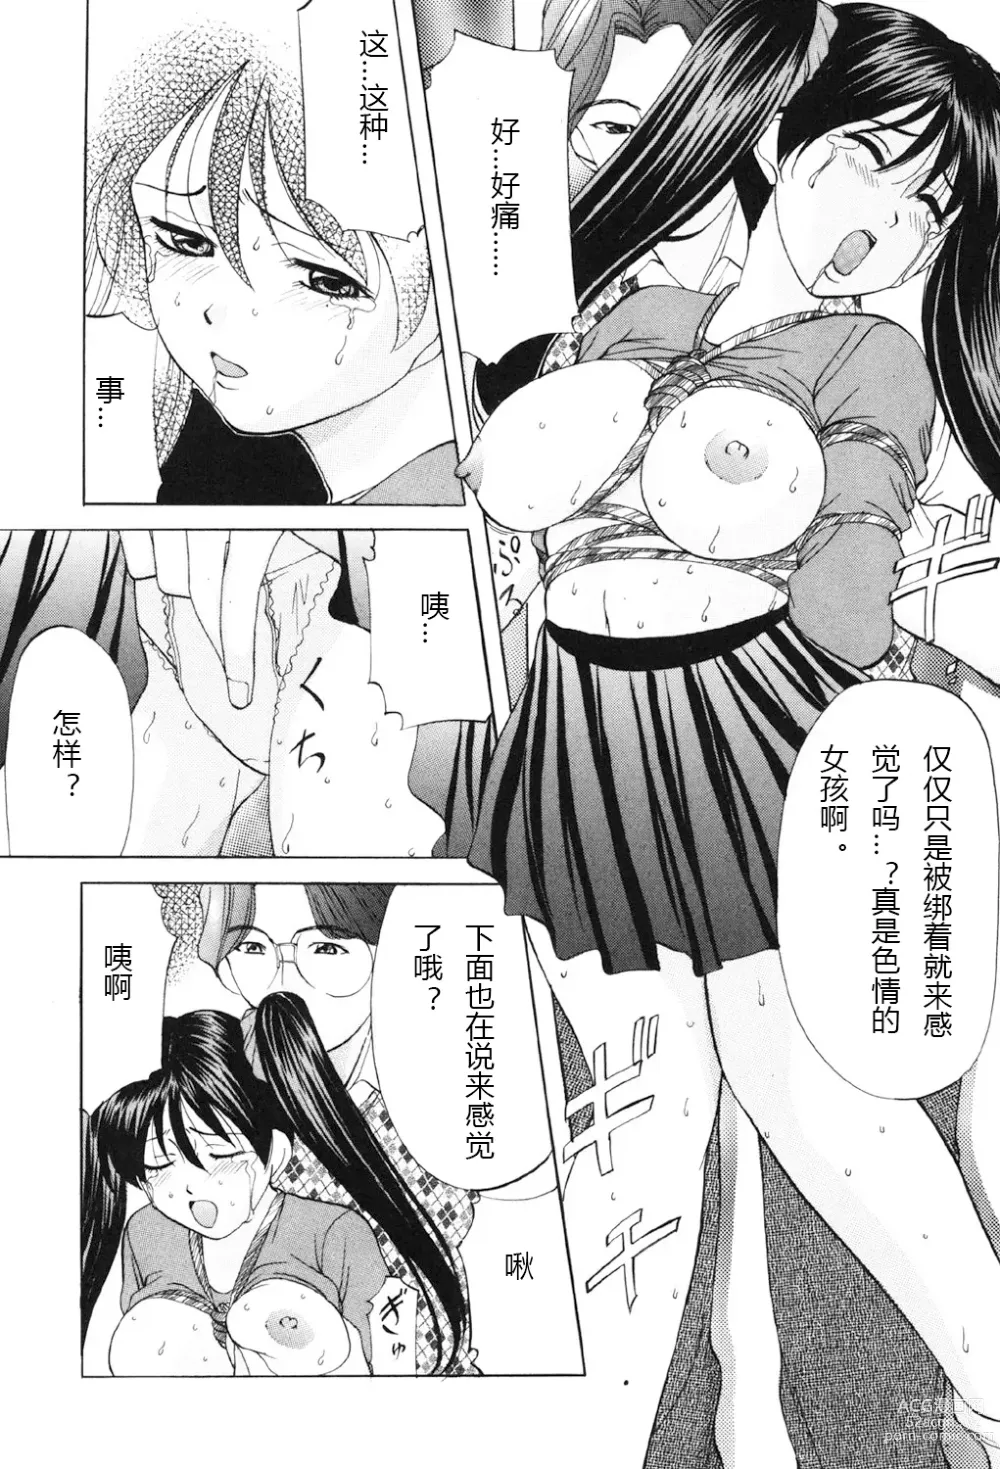 Page 139 of manga Kichiku Paradise - The Cruel Person Paradise